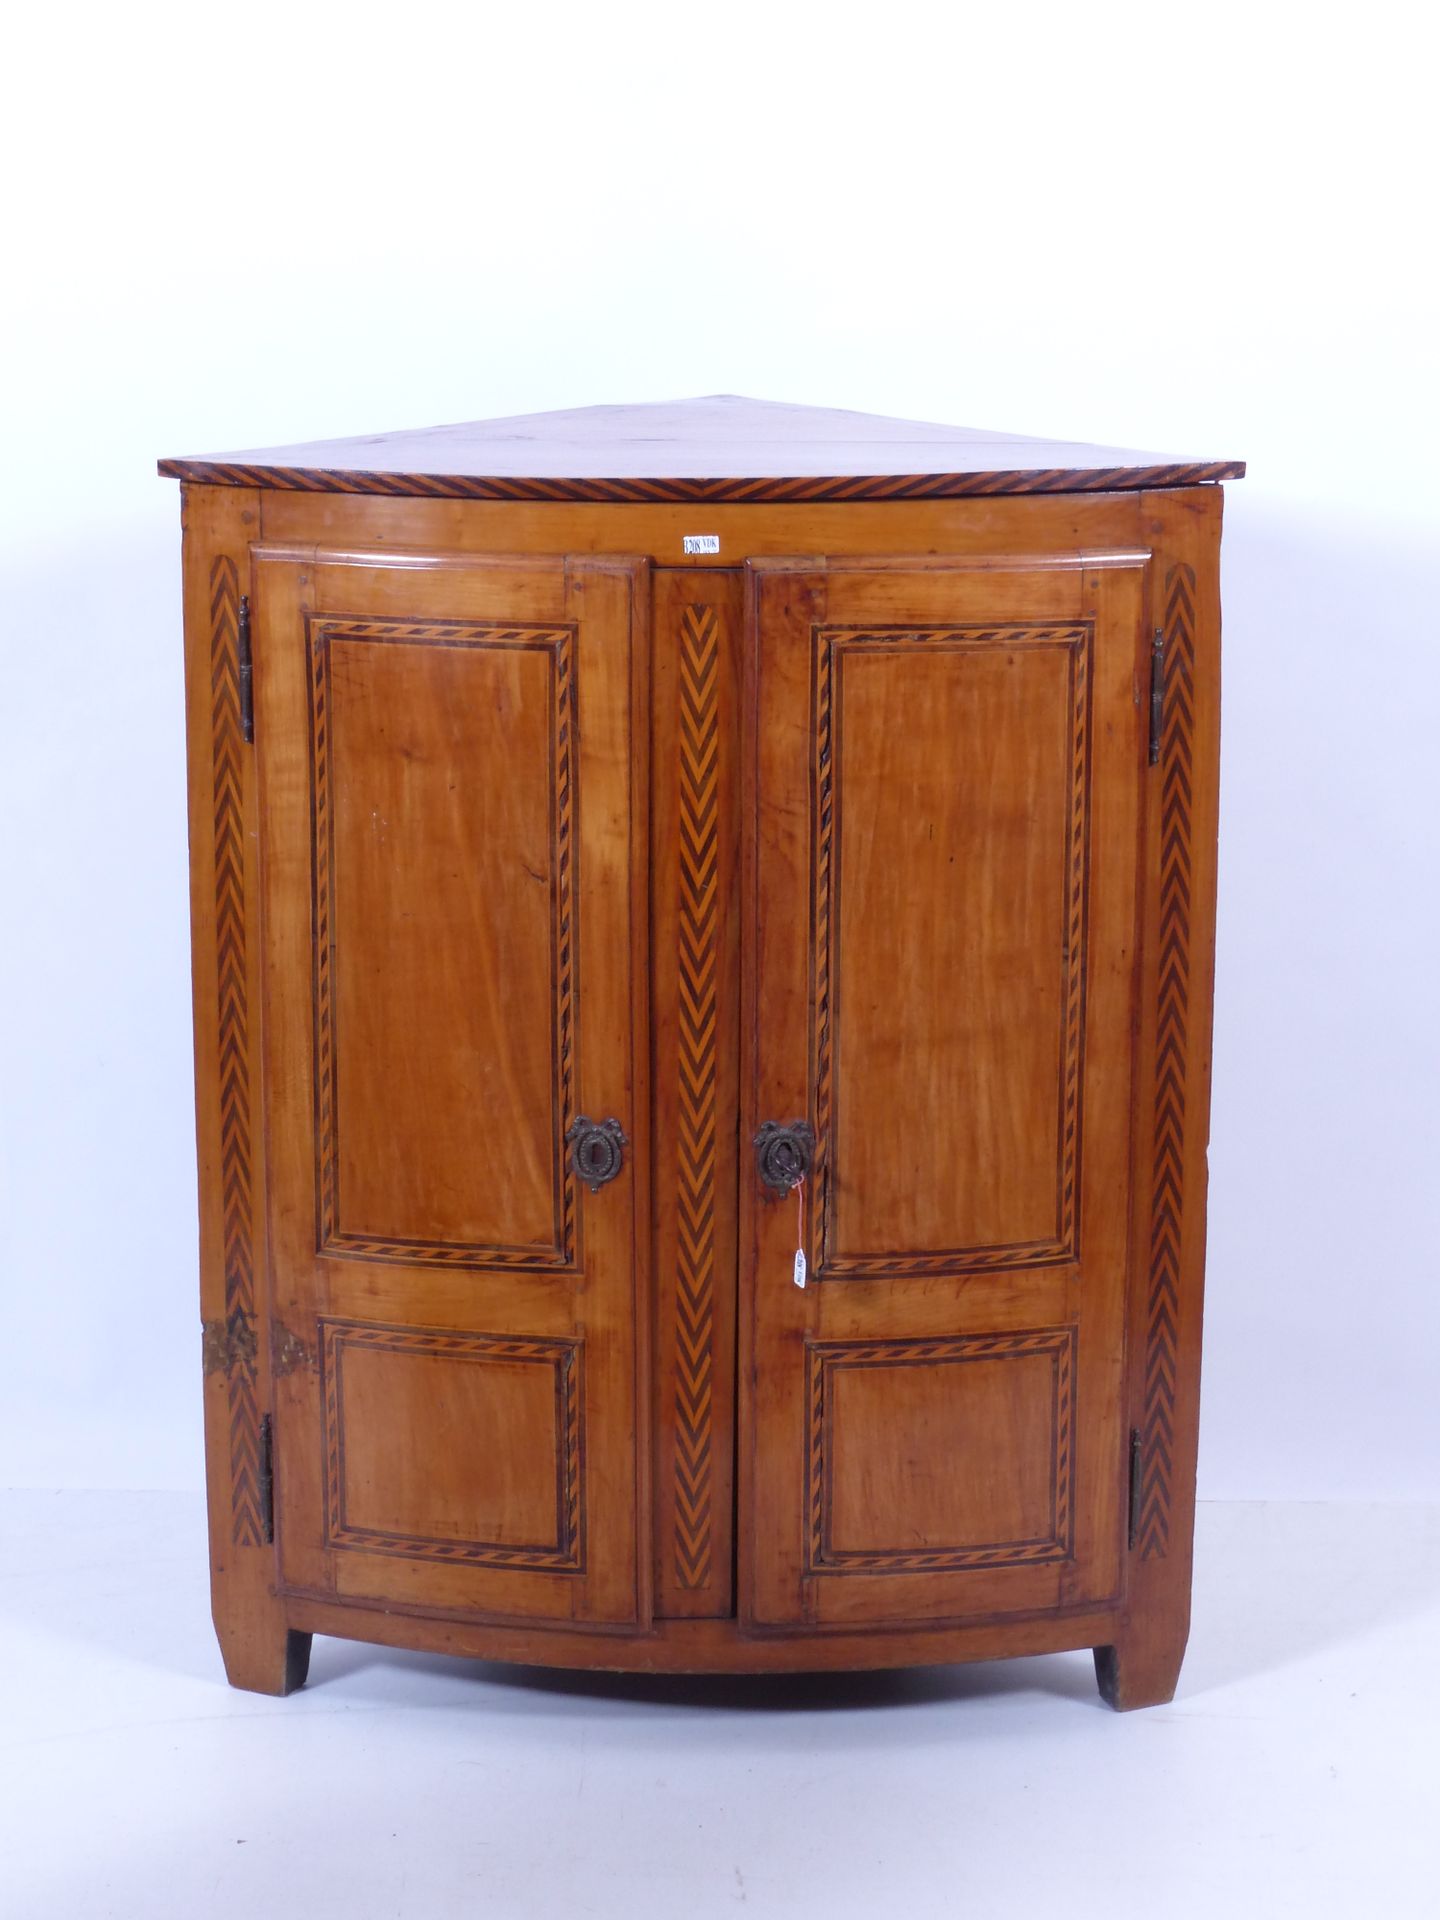 Null 路易十六风格的樱桃木和镶嵌餐具柜。时期：十八世纪末。半径：56厘米，高度：99厘米。